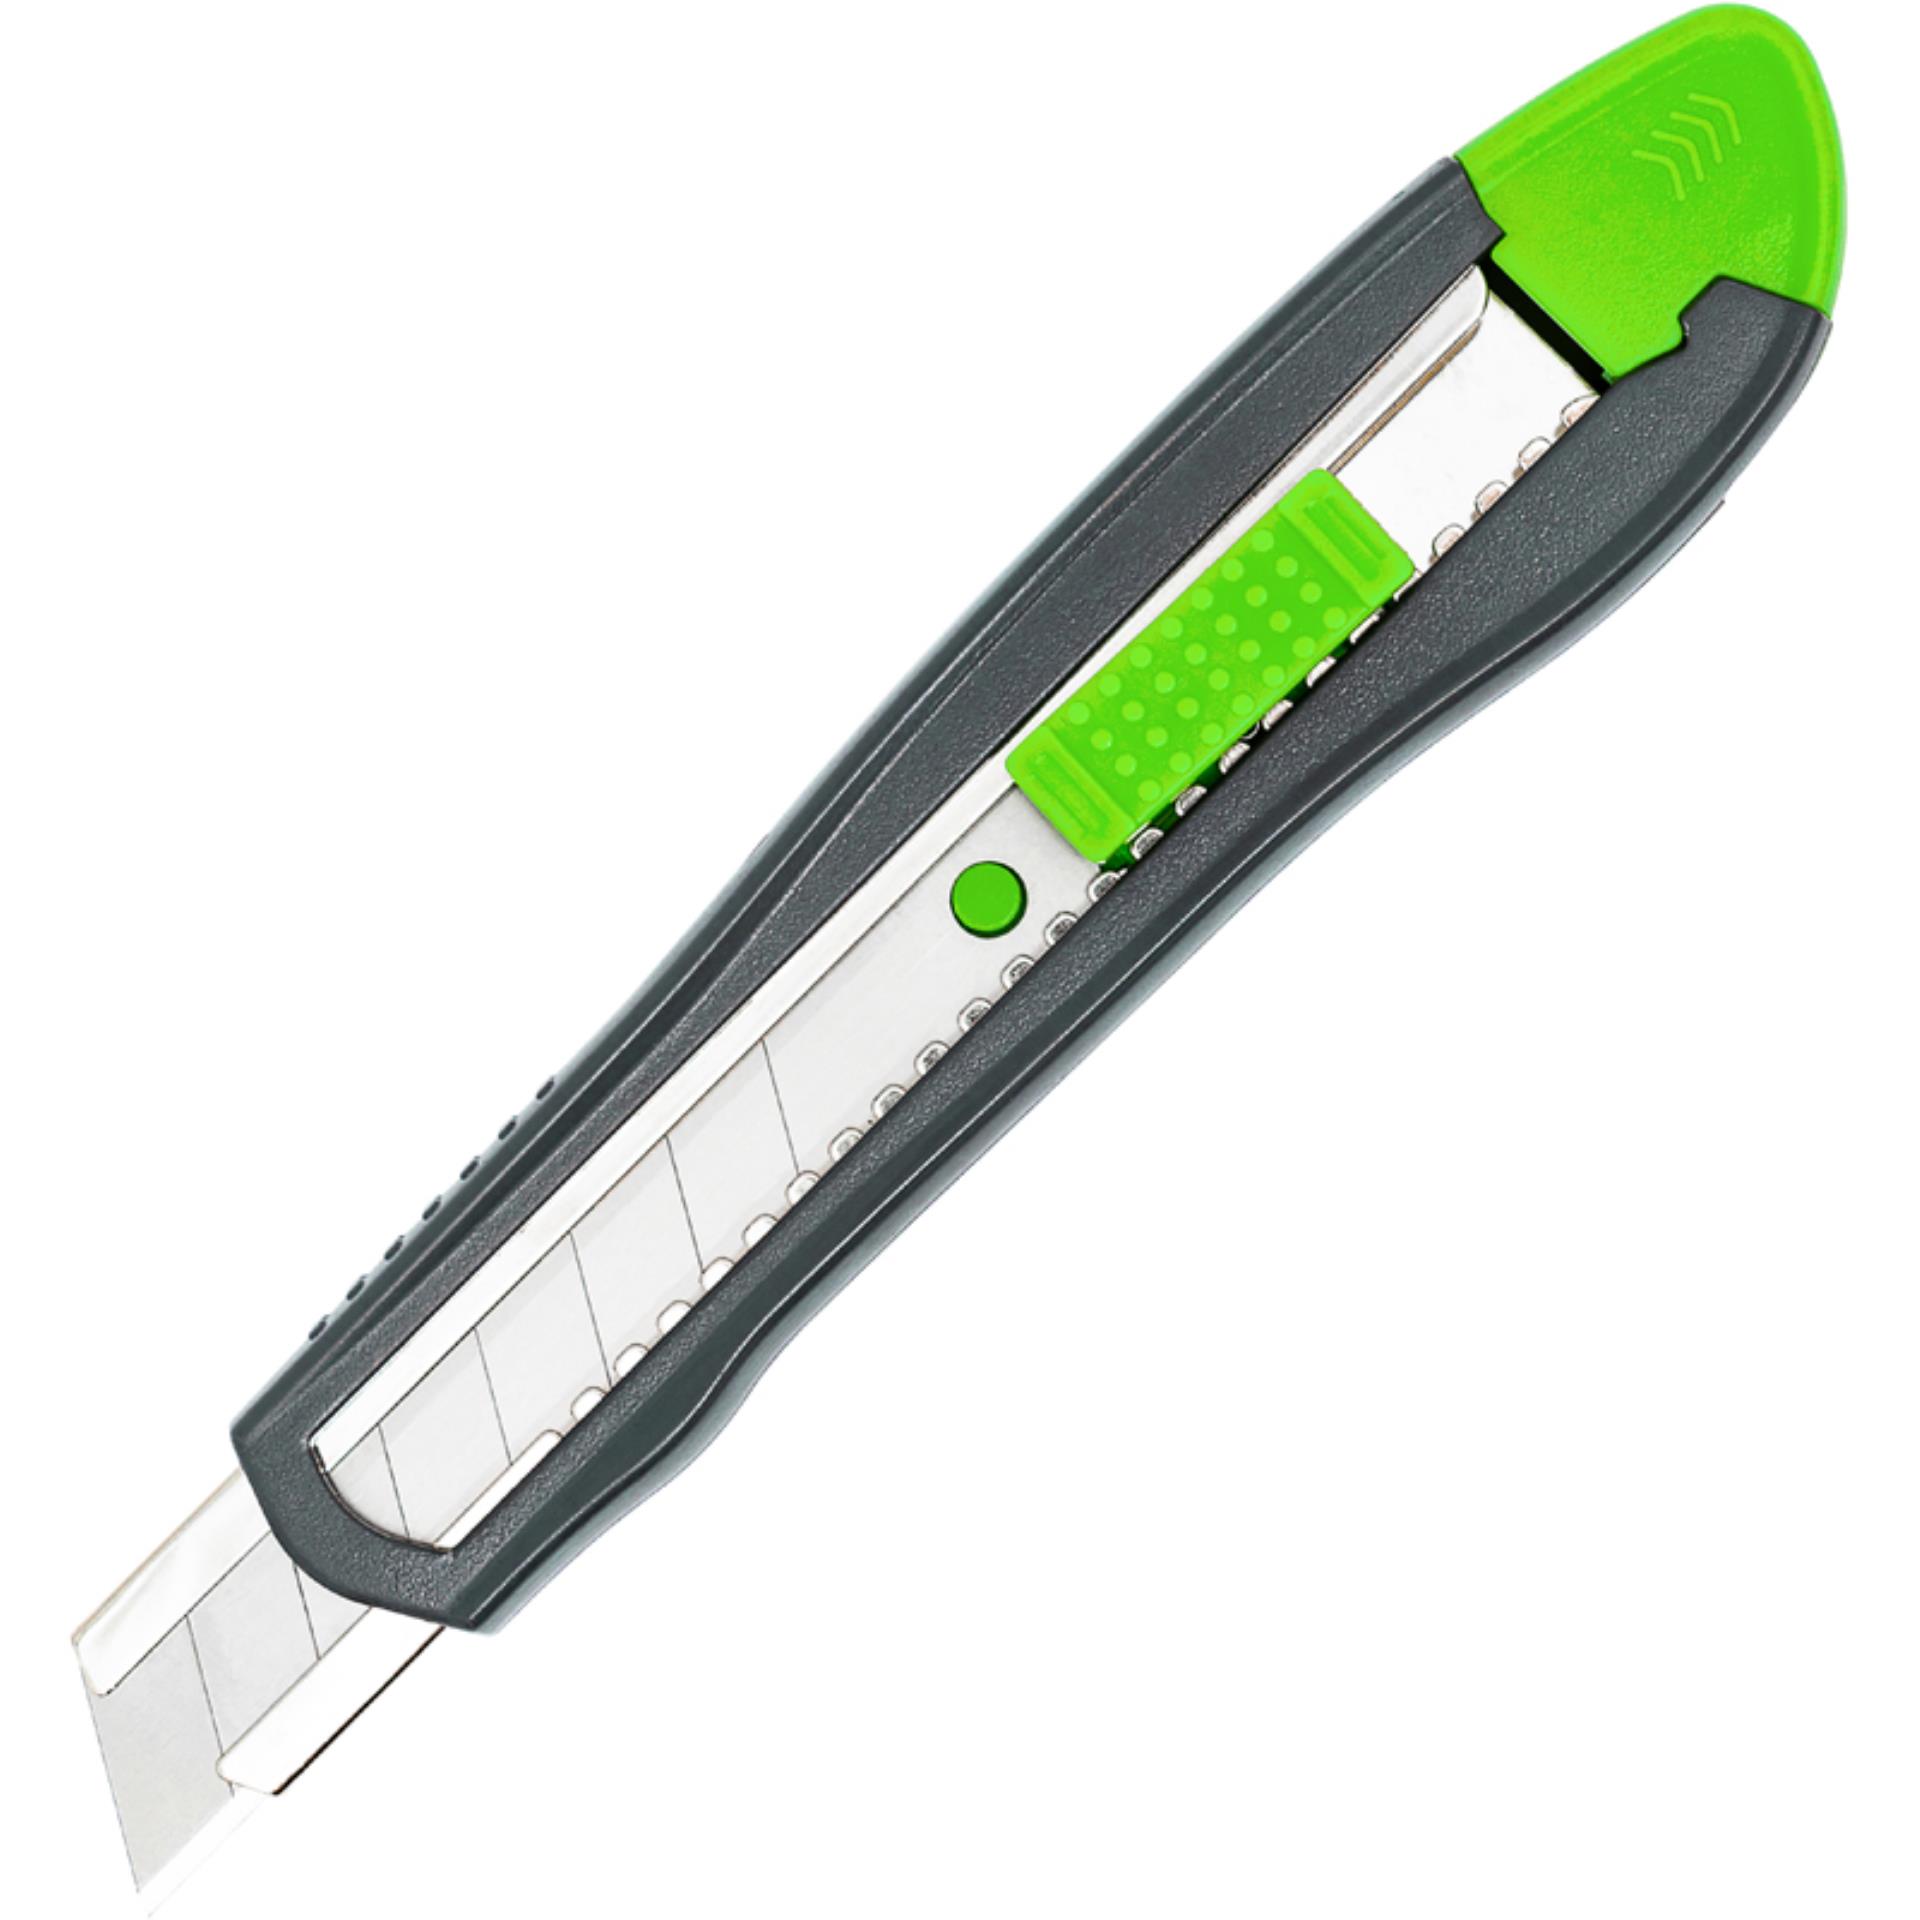 Odlamovací nůž Q-Connect, kovové zakončení, 18 mm